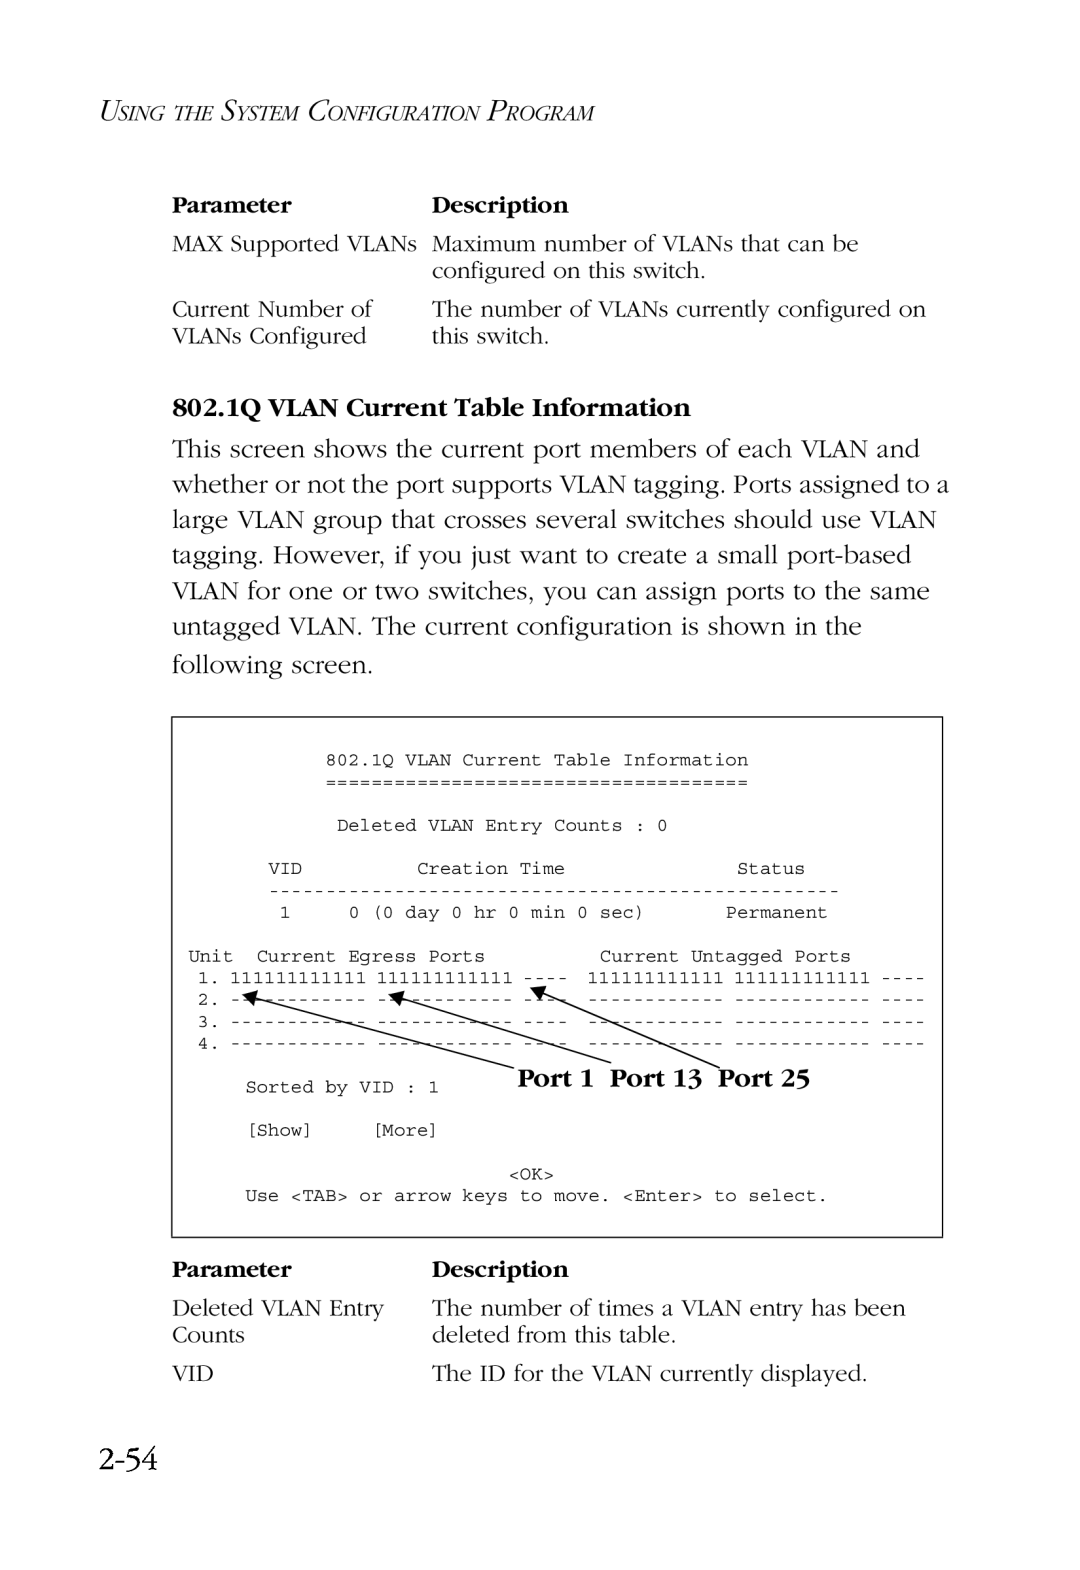 SMC Networks SMC6924VF manual 2-54, 802.1Q VLAN Current Table Information, Port 1 Port 13 Port 